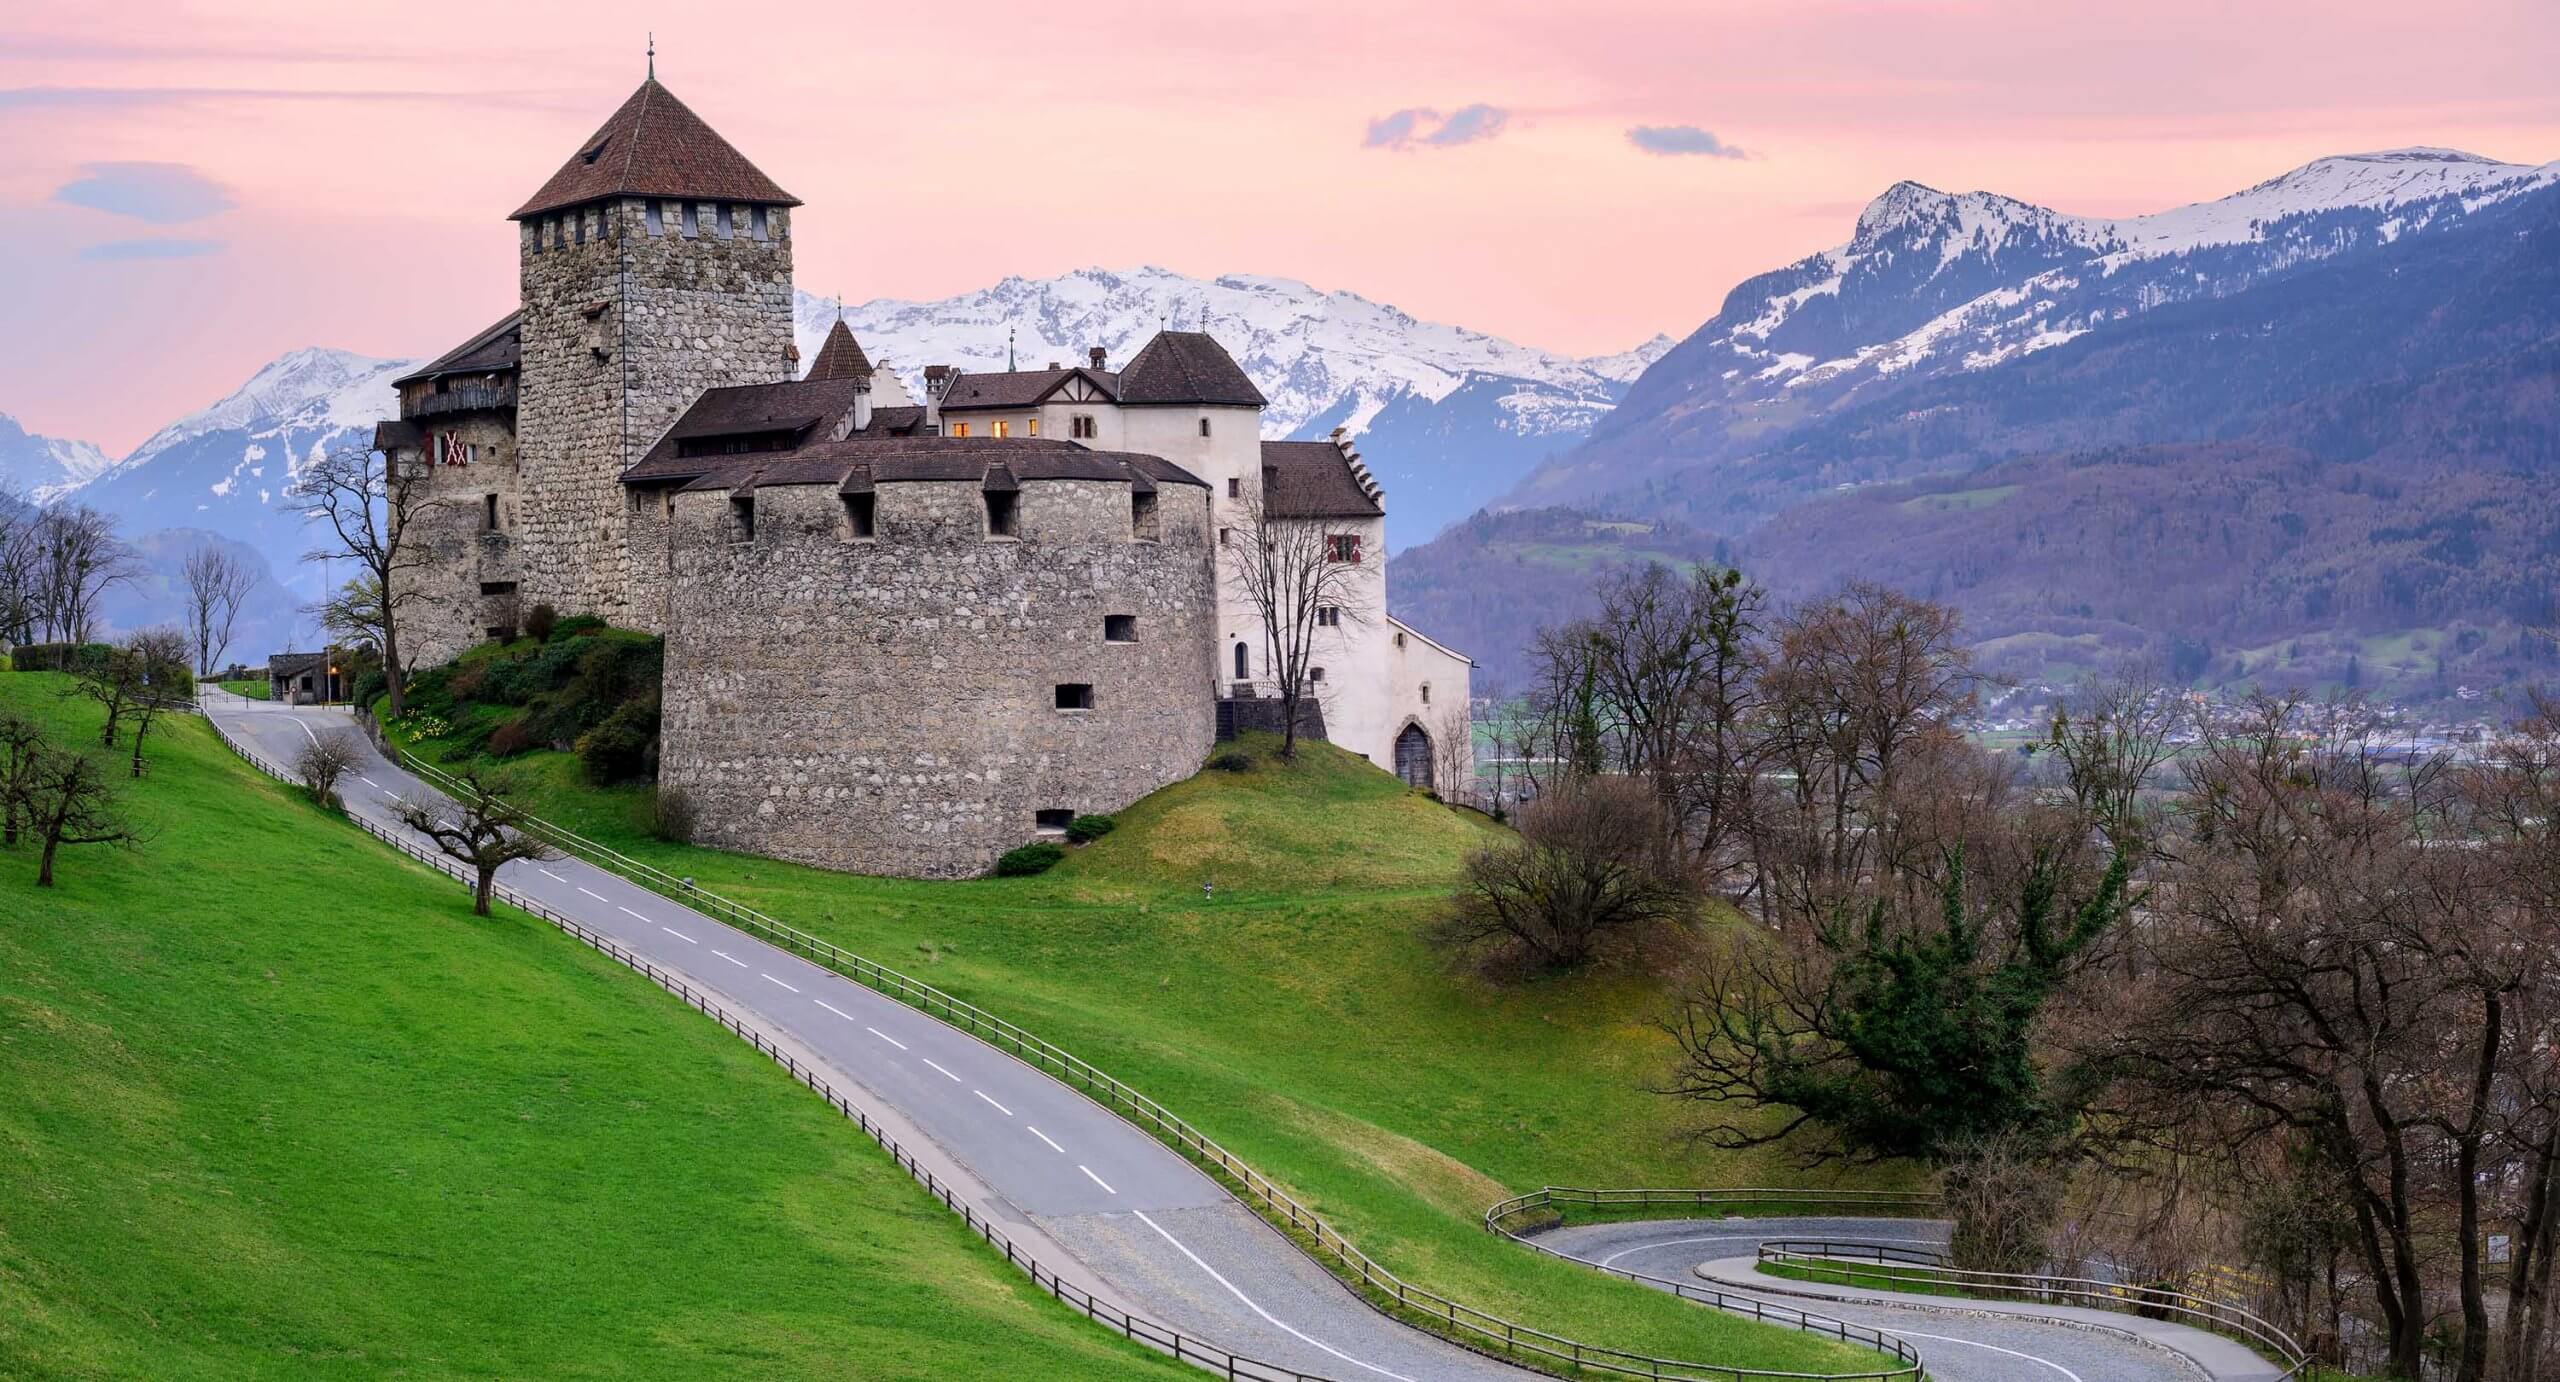 Liechtenstein castle